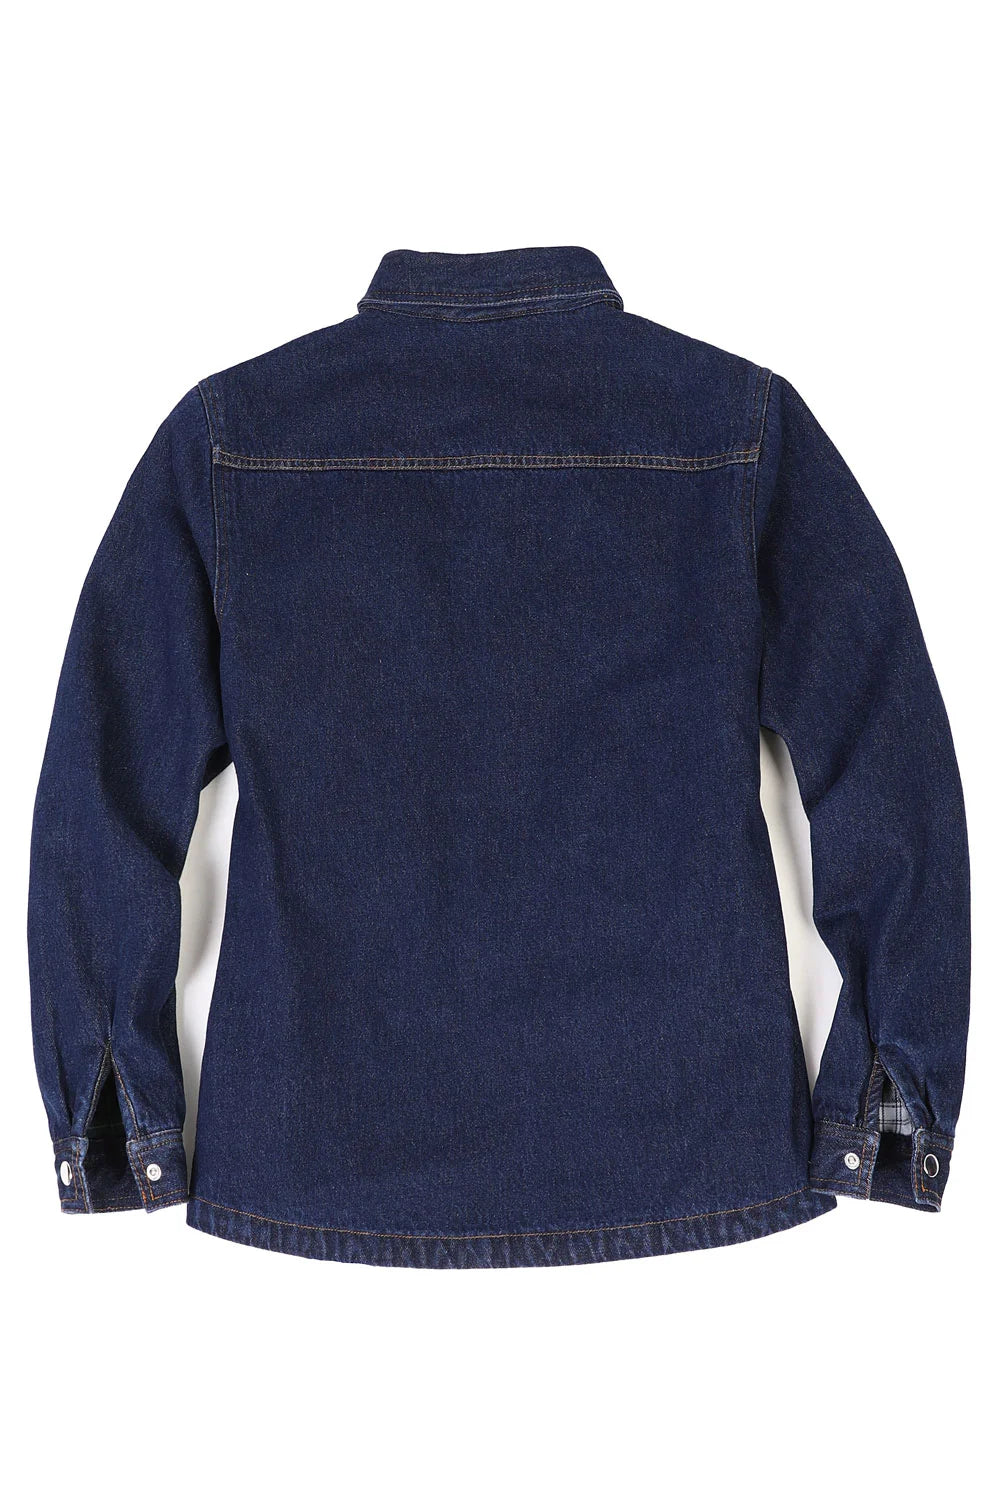 Women's Flannel-Lined Denim Shirt Jacket,Snap Jean Shacket